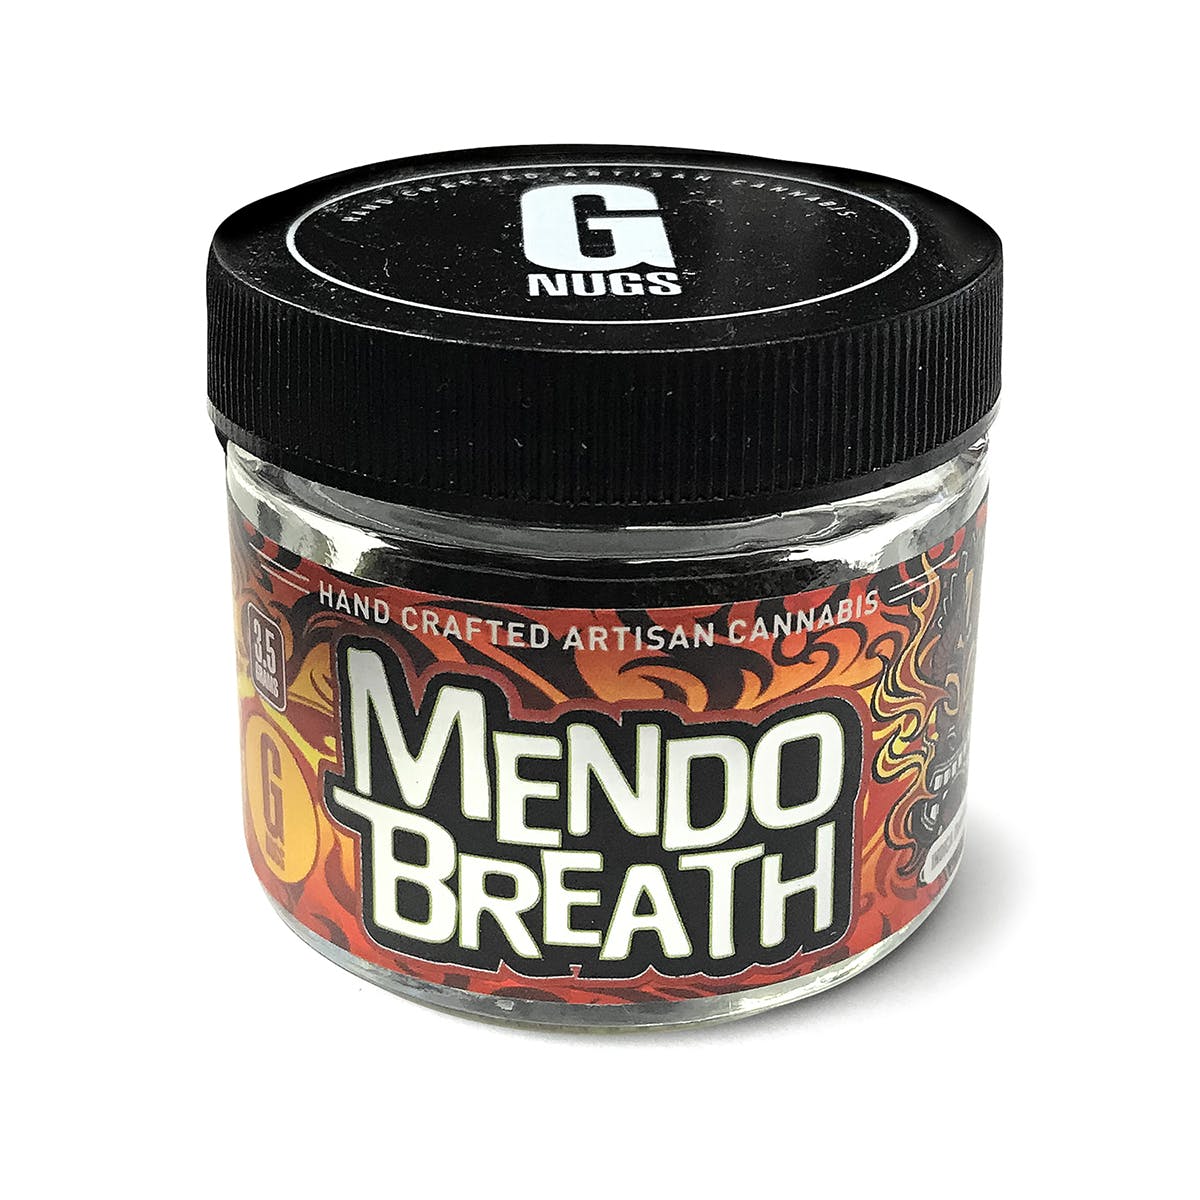 G NUGS - Mendo Breath